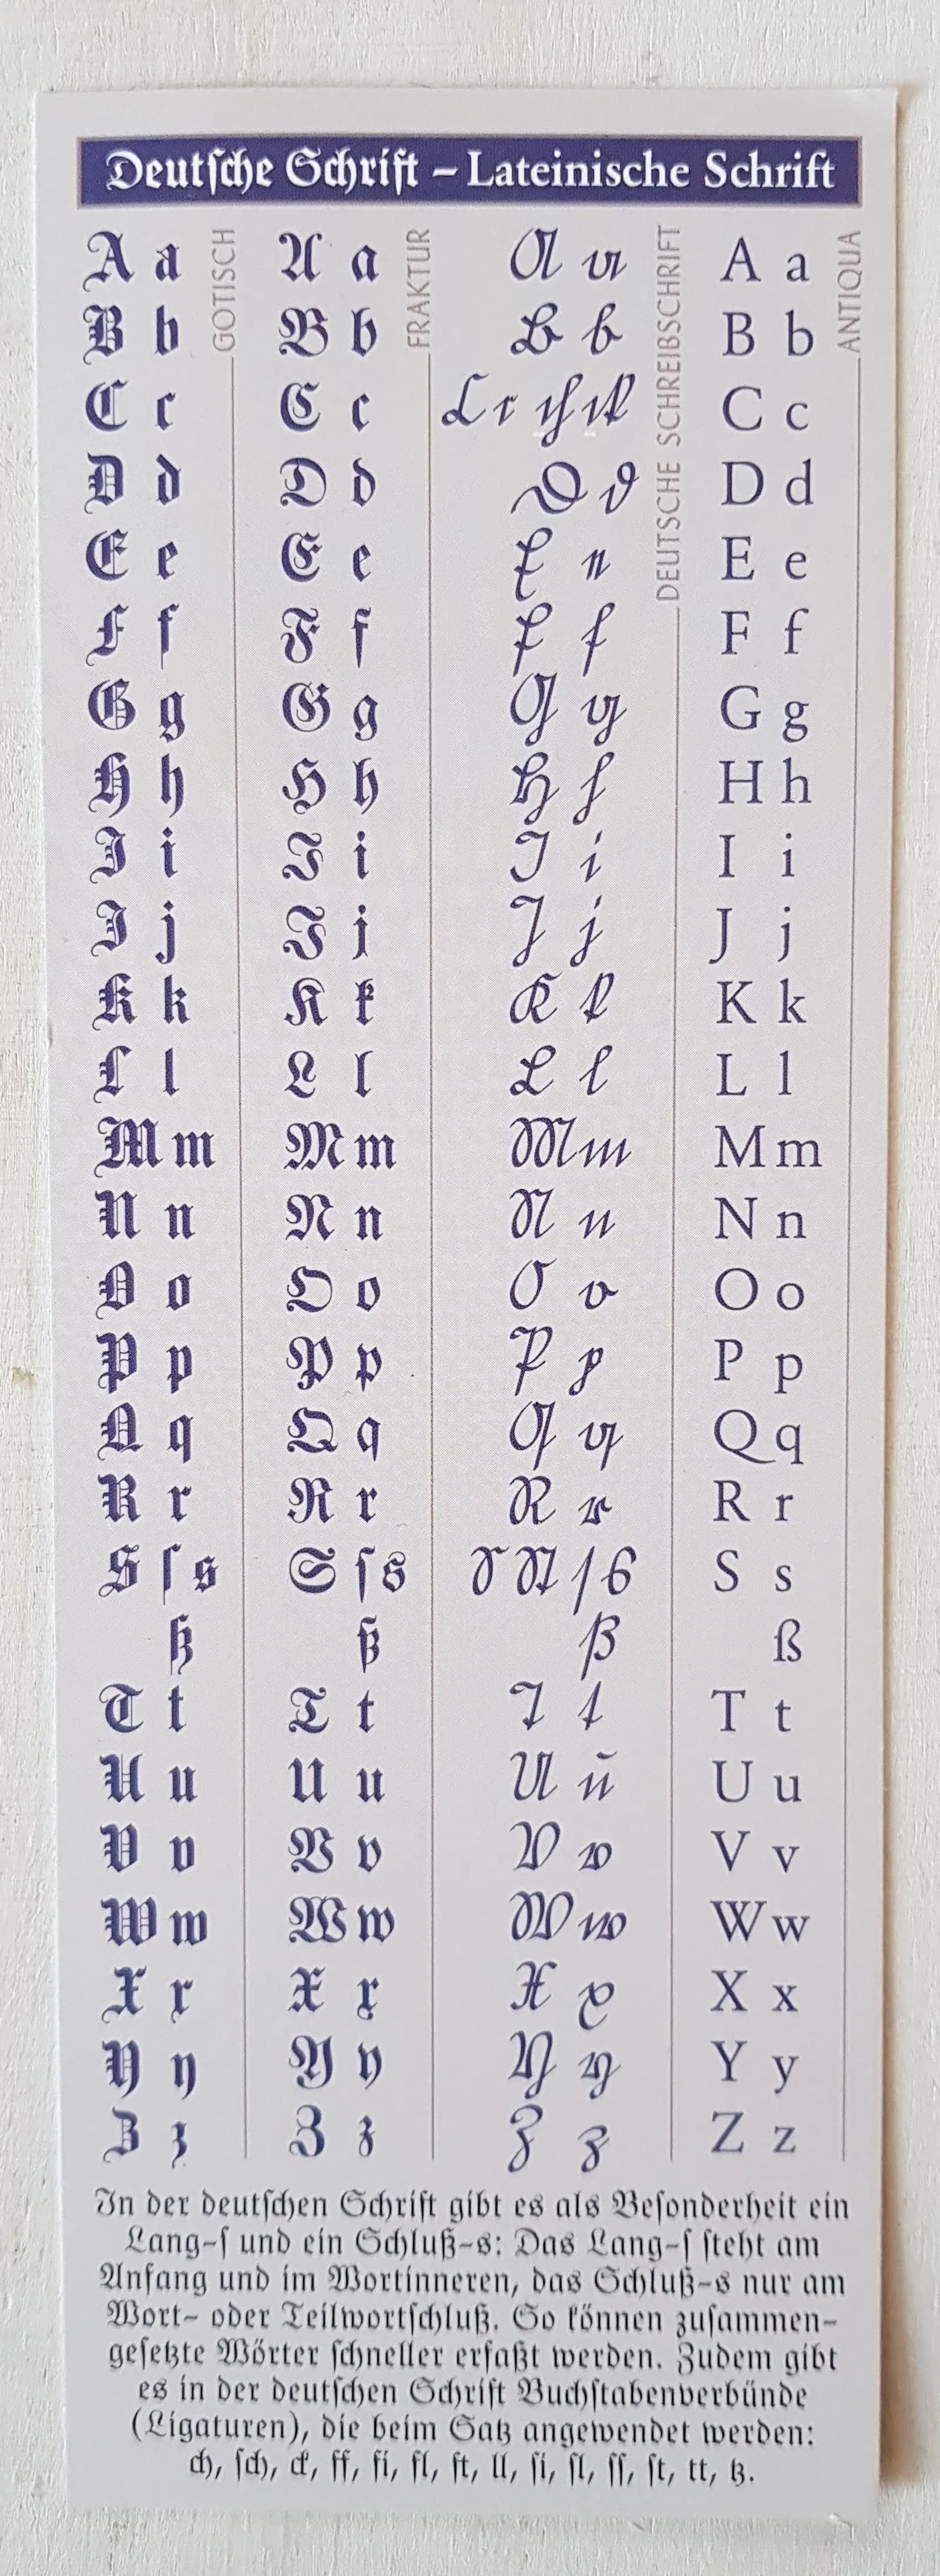 Lesezeichen in Frakturschrifr, das »die deutsche Schrift« erklärt